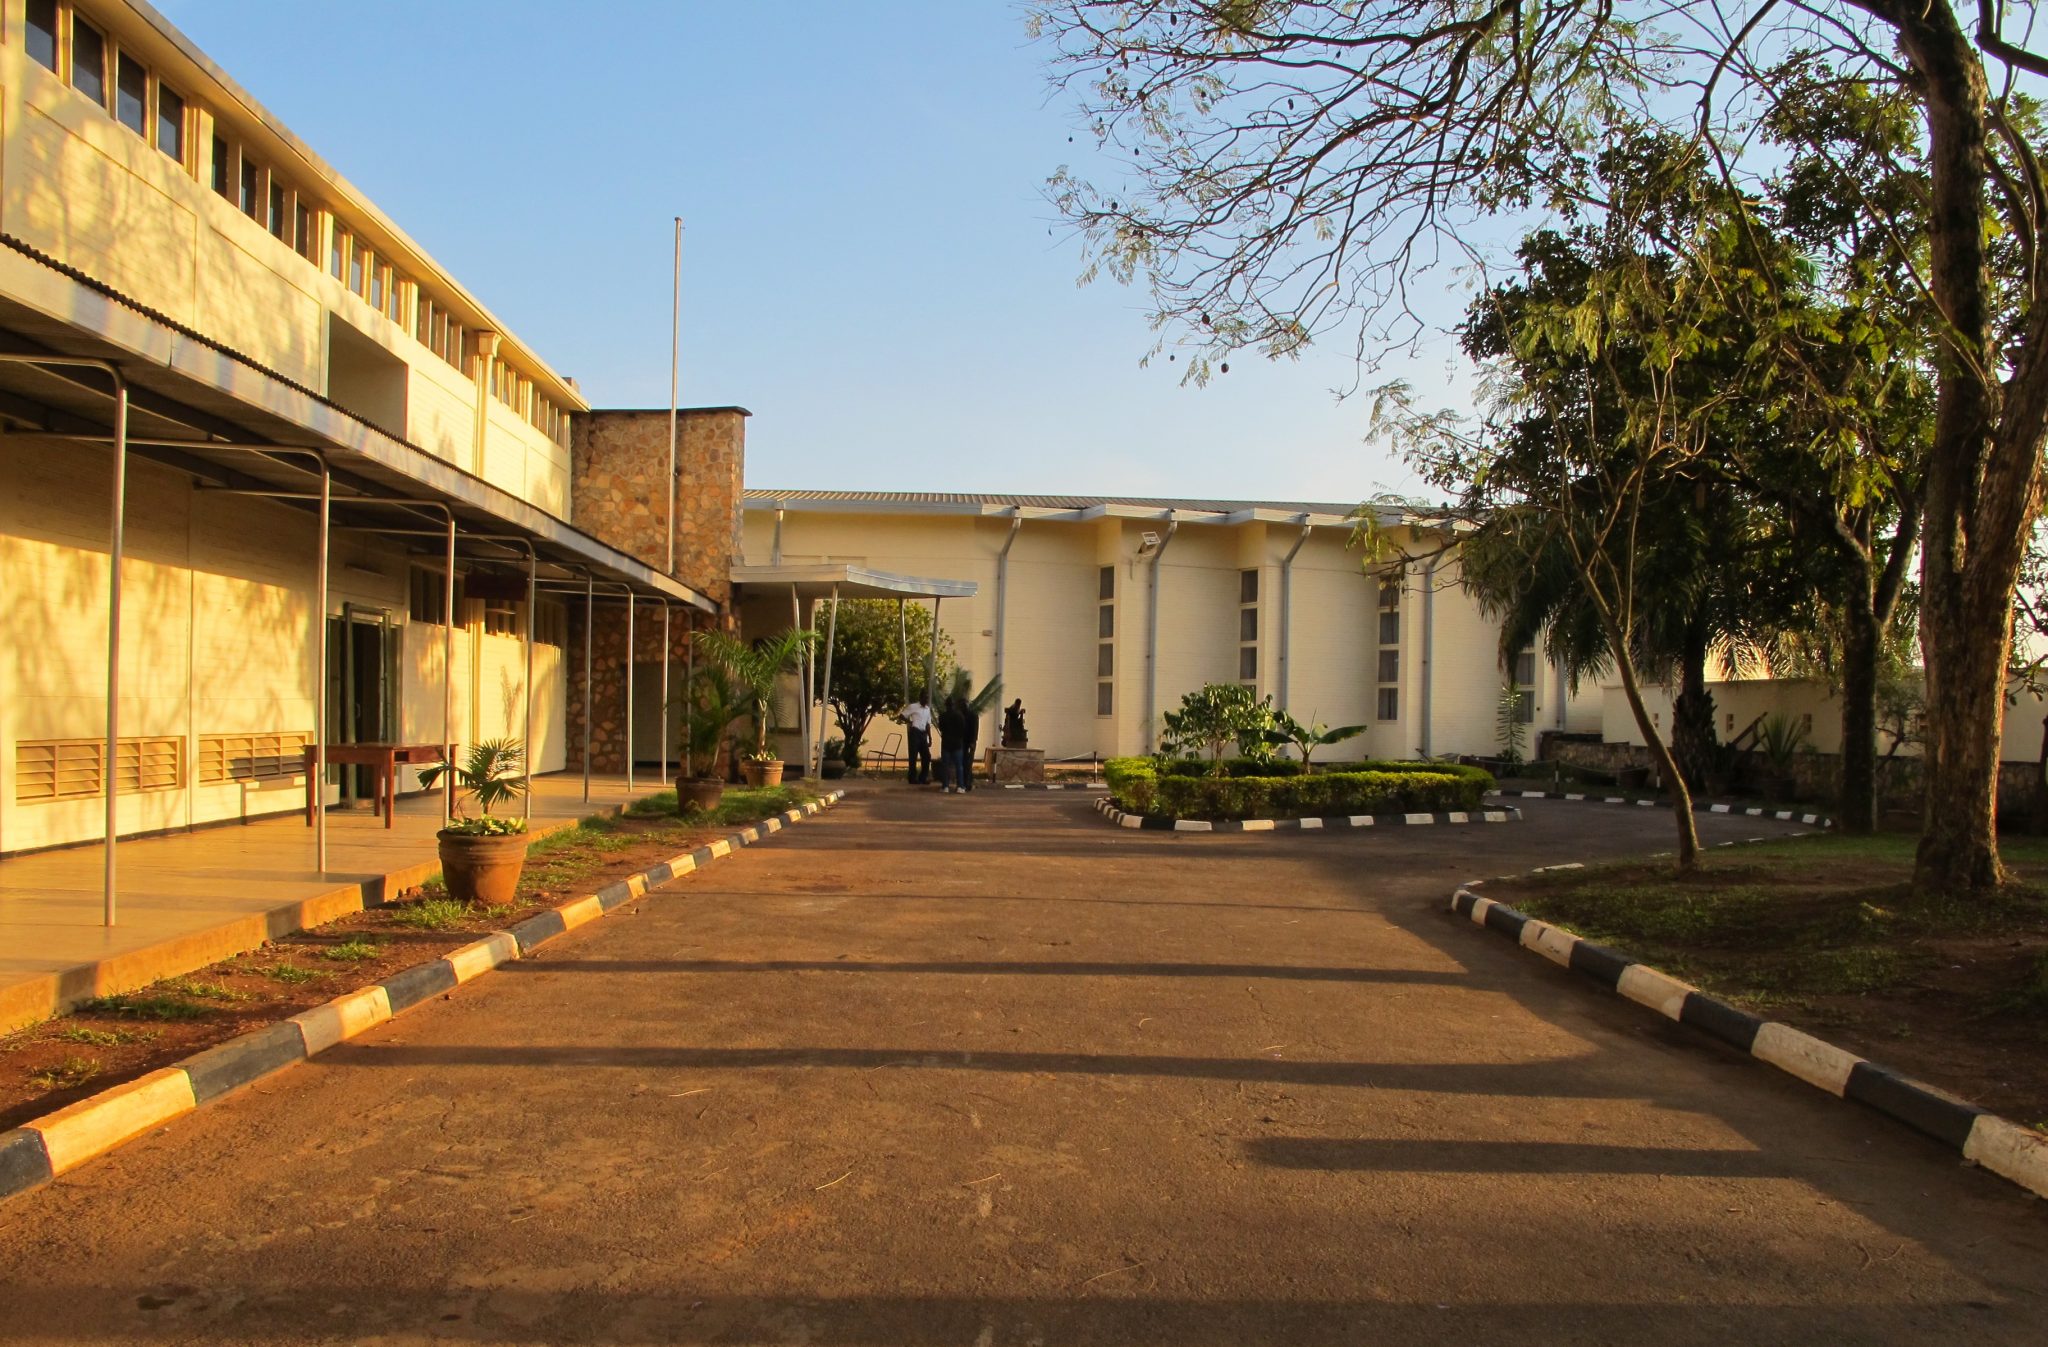 Uganda National Museum für den Wiederaufbau eingestellt